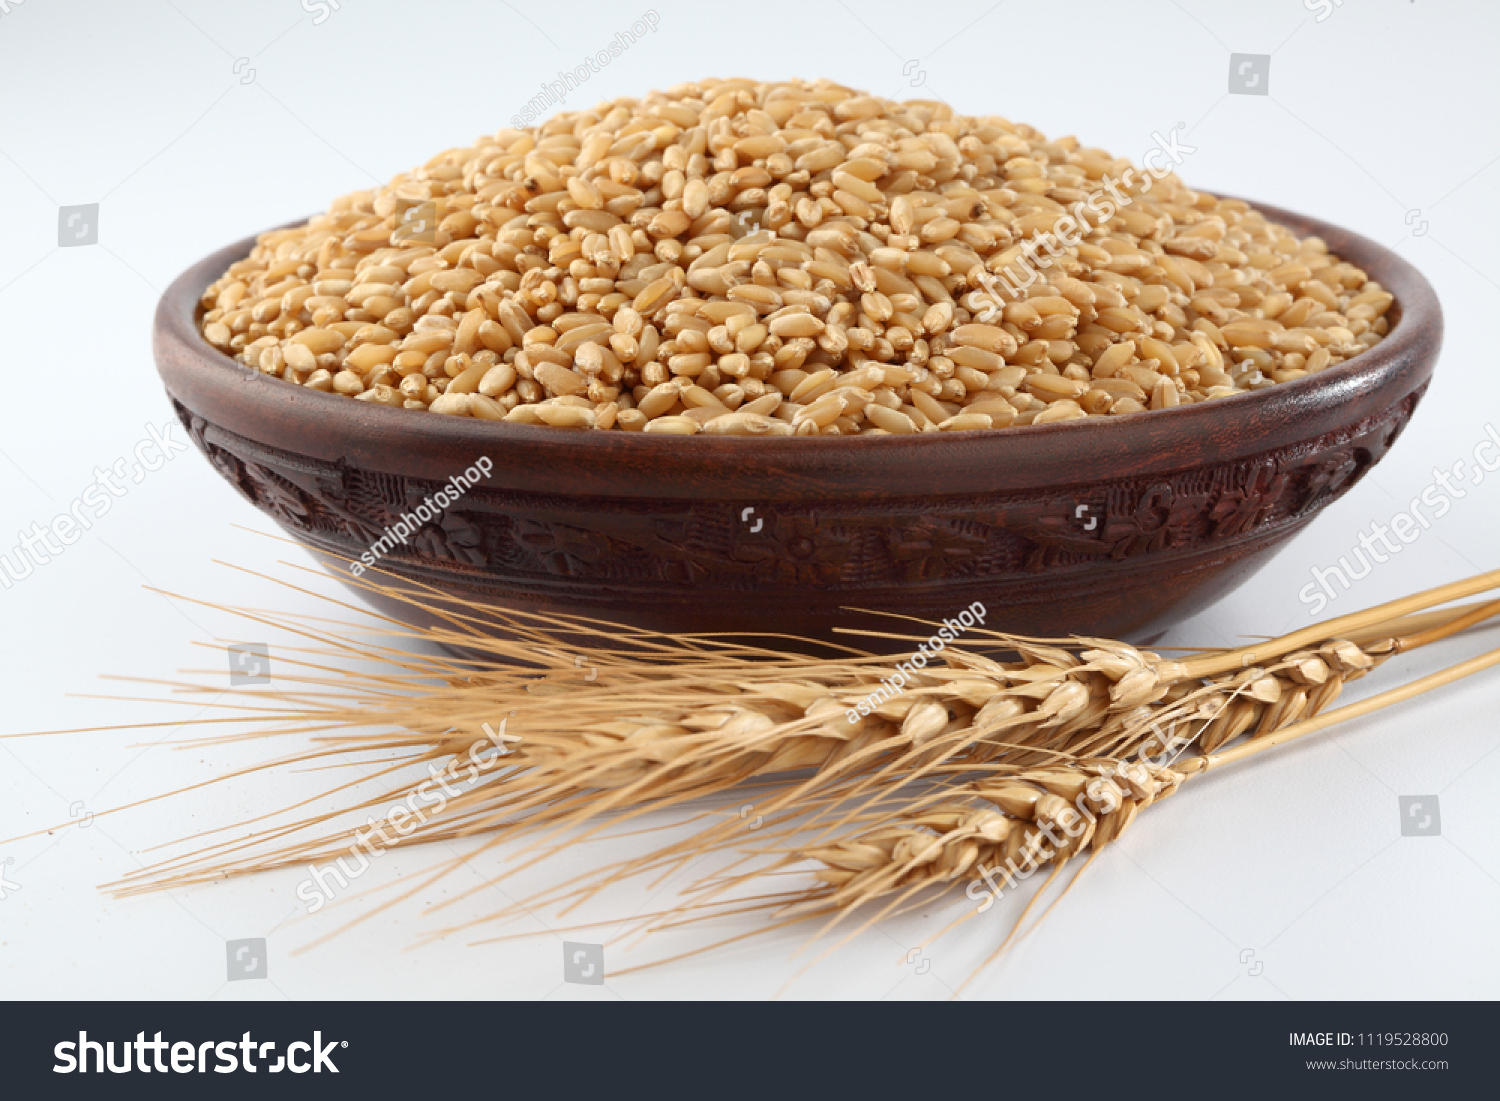 Wheat grains ,Grain of the wheat , whole wheat grains #1119528800